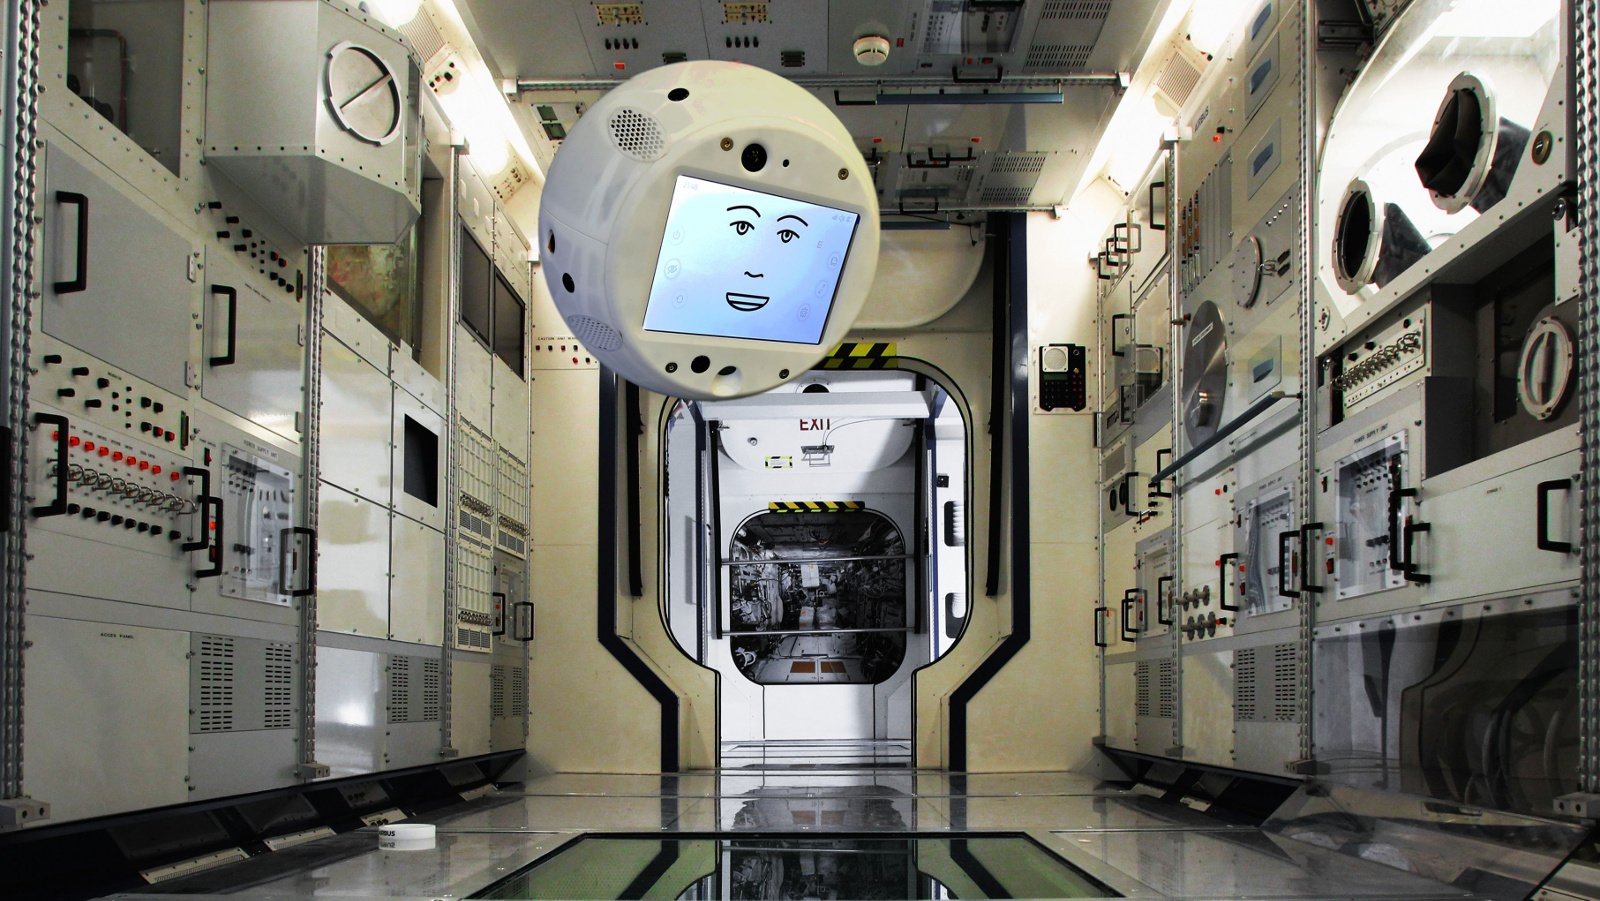 En ny medlem av besättningen på ISS kommer att vara flygande robot med artificiell intelligens